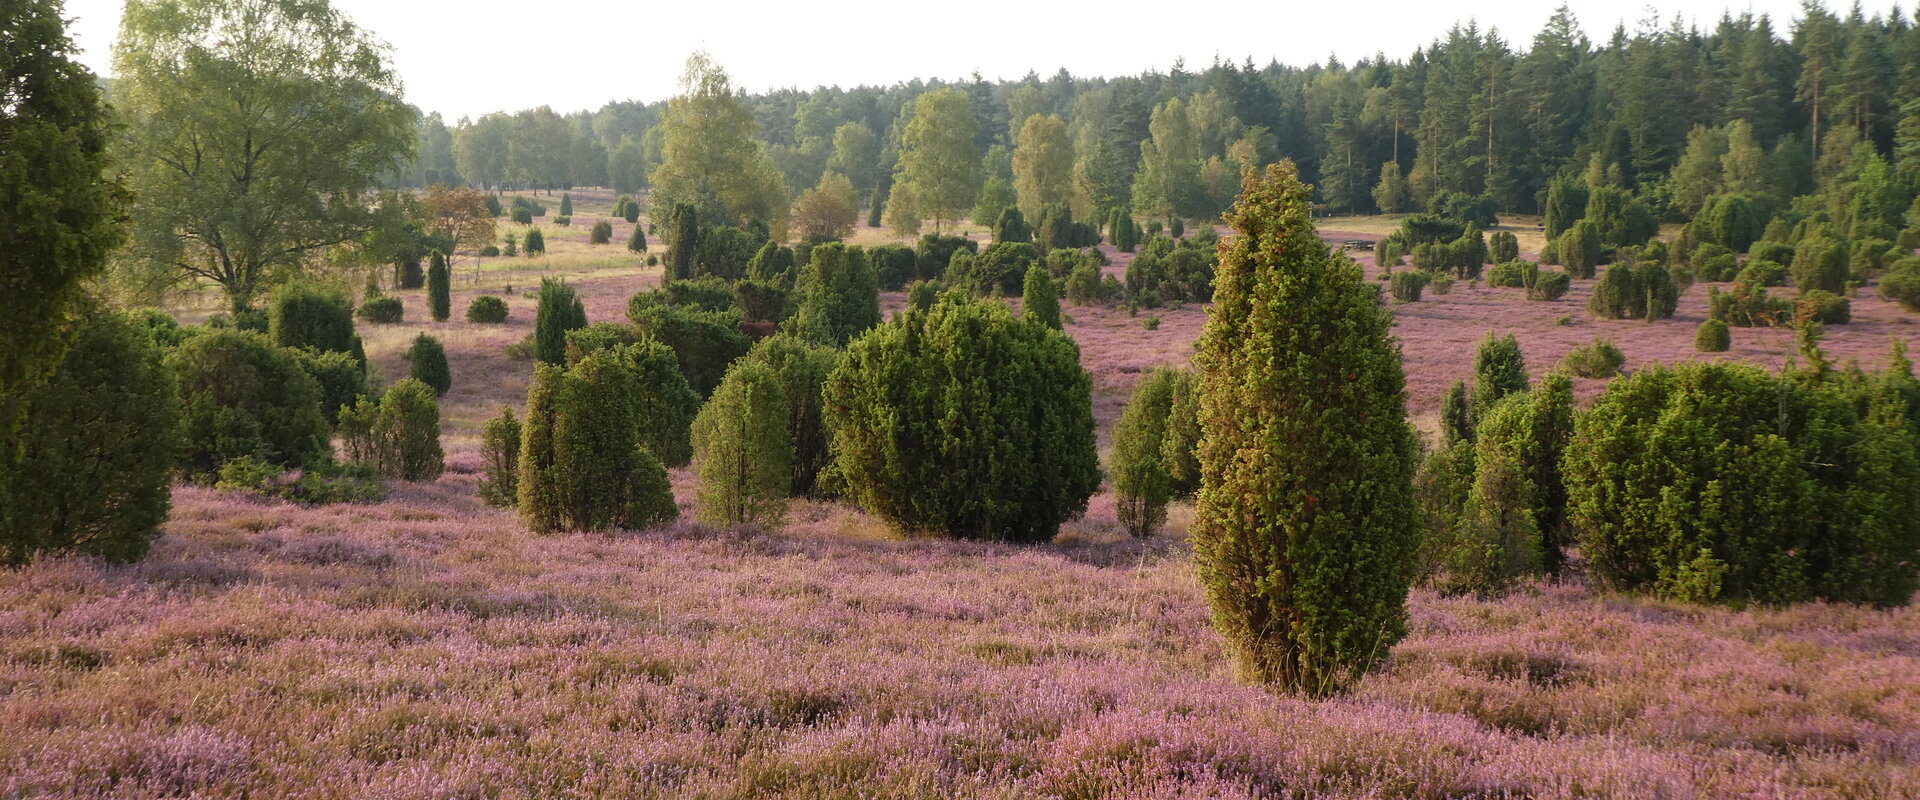 Blick auf die blühende Heidelandschaft und die Wacholderbüsche in der Ellerndorfer Heide